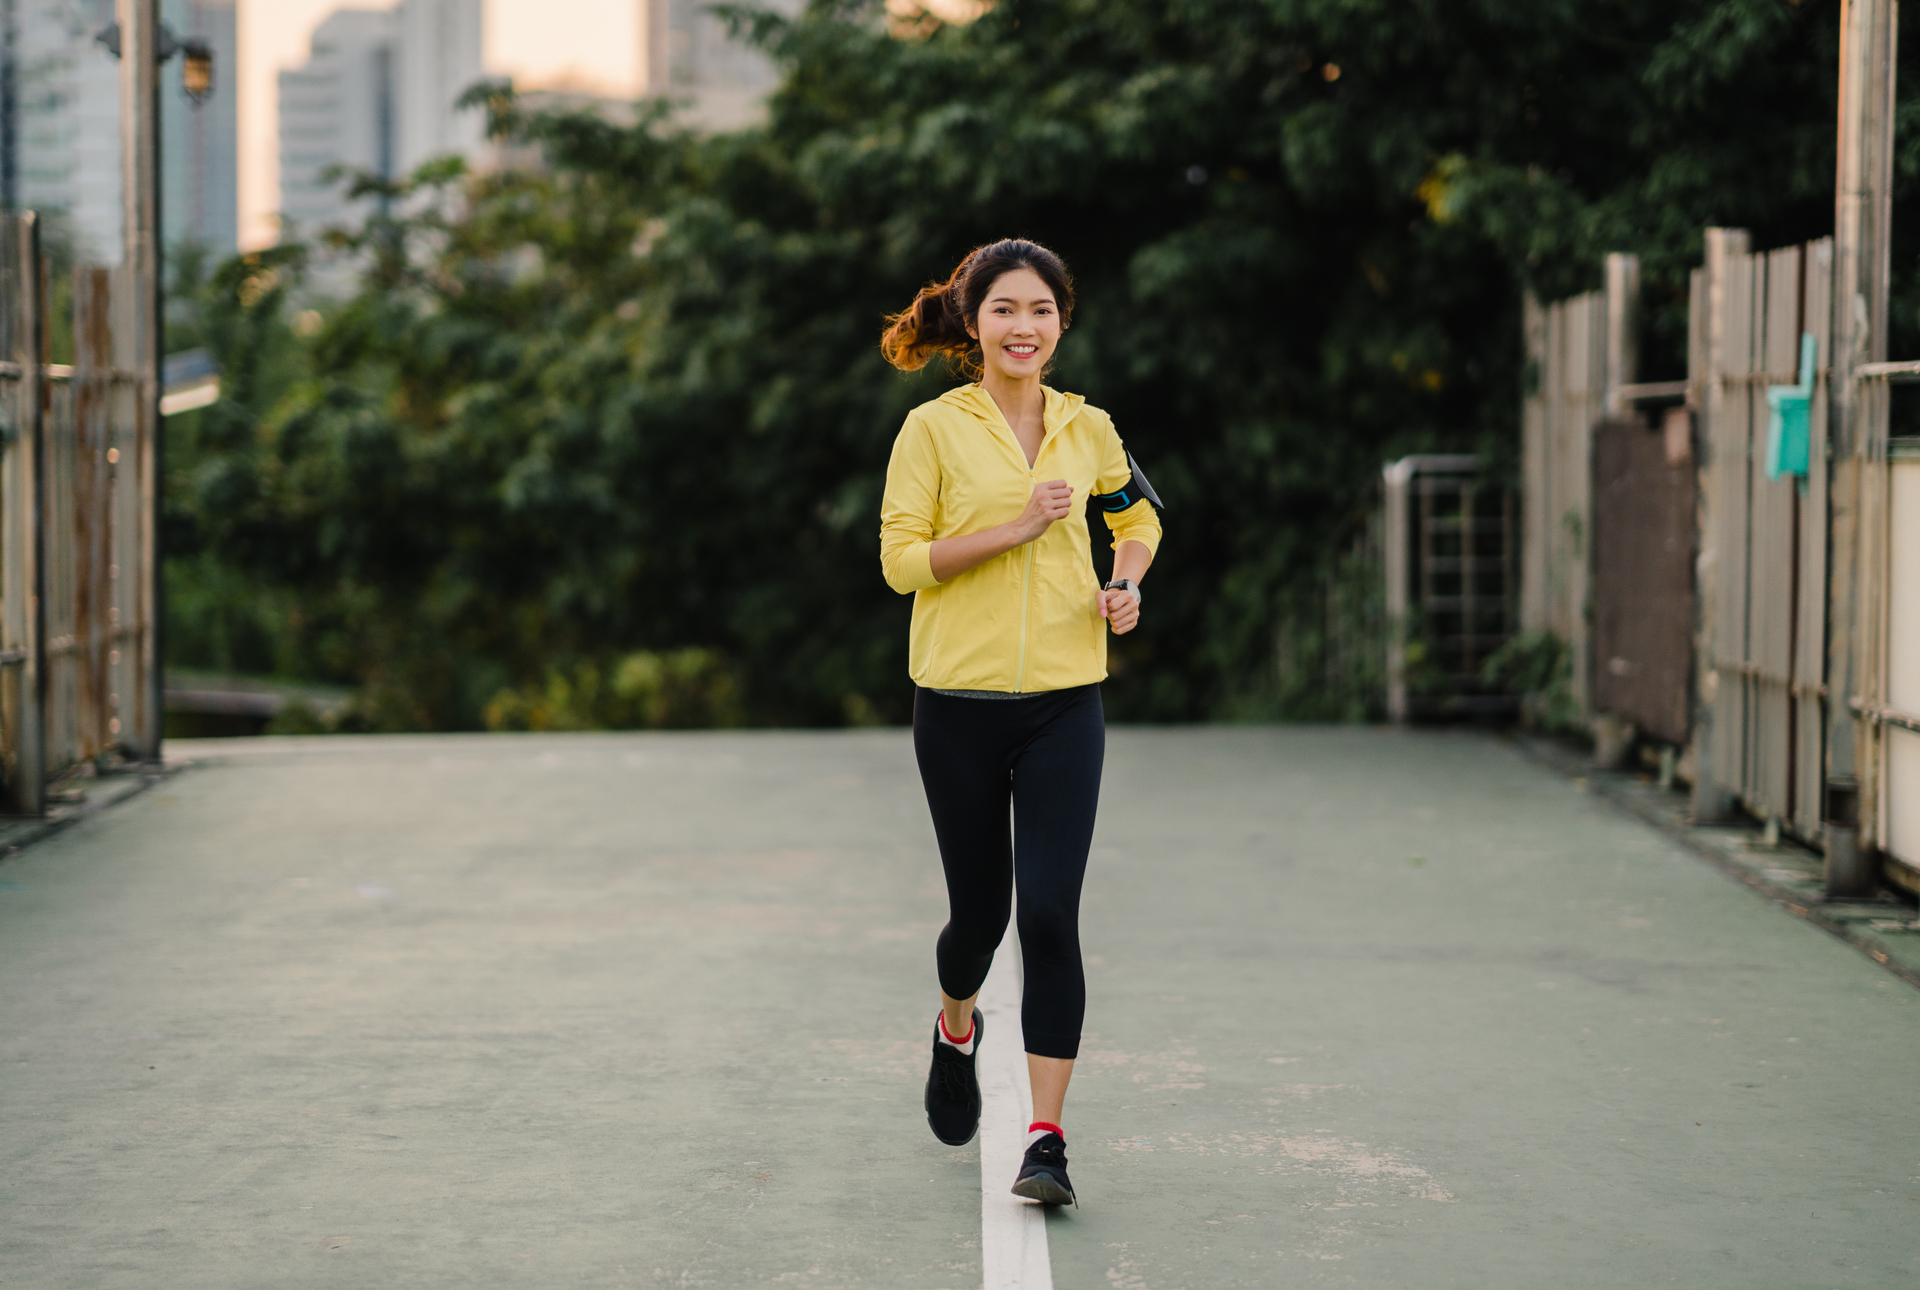 Na tym obrazku możemy zobaczyć energiczną kobietę, uprawiającą jogging jako część swojego codziennego ruchu, dbając tym samym o poziom D-dimerów. Jej determinacja w utrzymaniu aktywnego stylu życia podkreśla istotę regularnej aktywności fizycznej w celu utrzymania zdrowia. Ta scena ilustruje, jak podejście do aktywności fizycznej może mieć pozytywny wpływ na poziom D-dimerów i ogólną kondycję organizmu